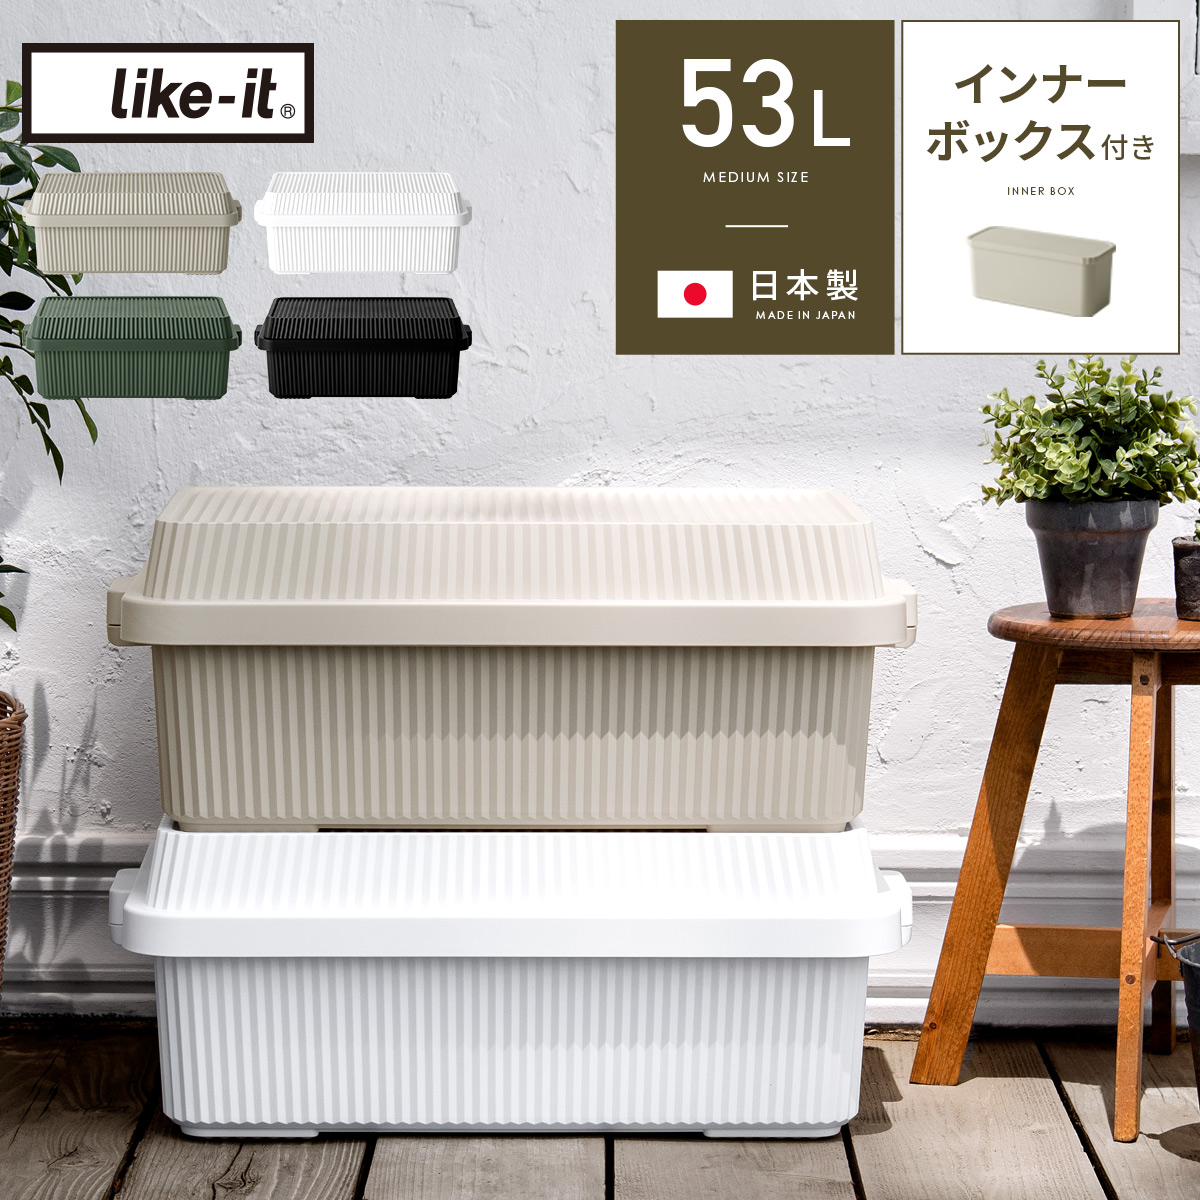 like it(ライクイット) スタックアップコンテナー53L インナーボックスセット 【公式】 エア・リゾーム インテリア・家具通販